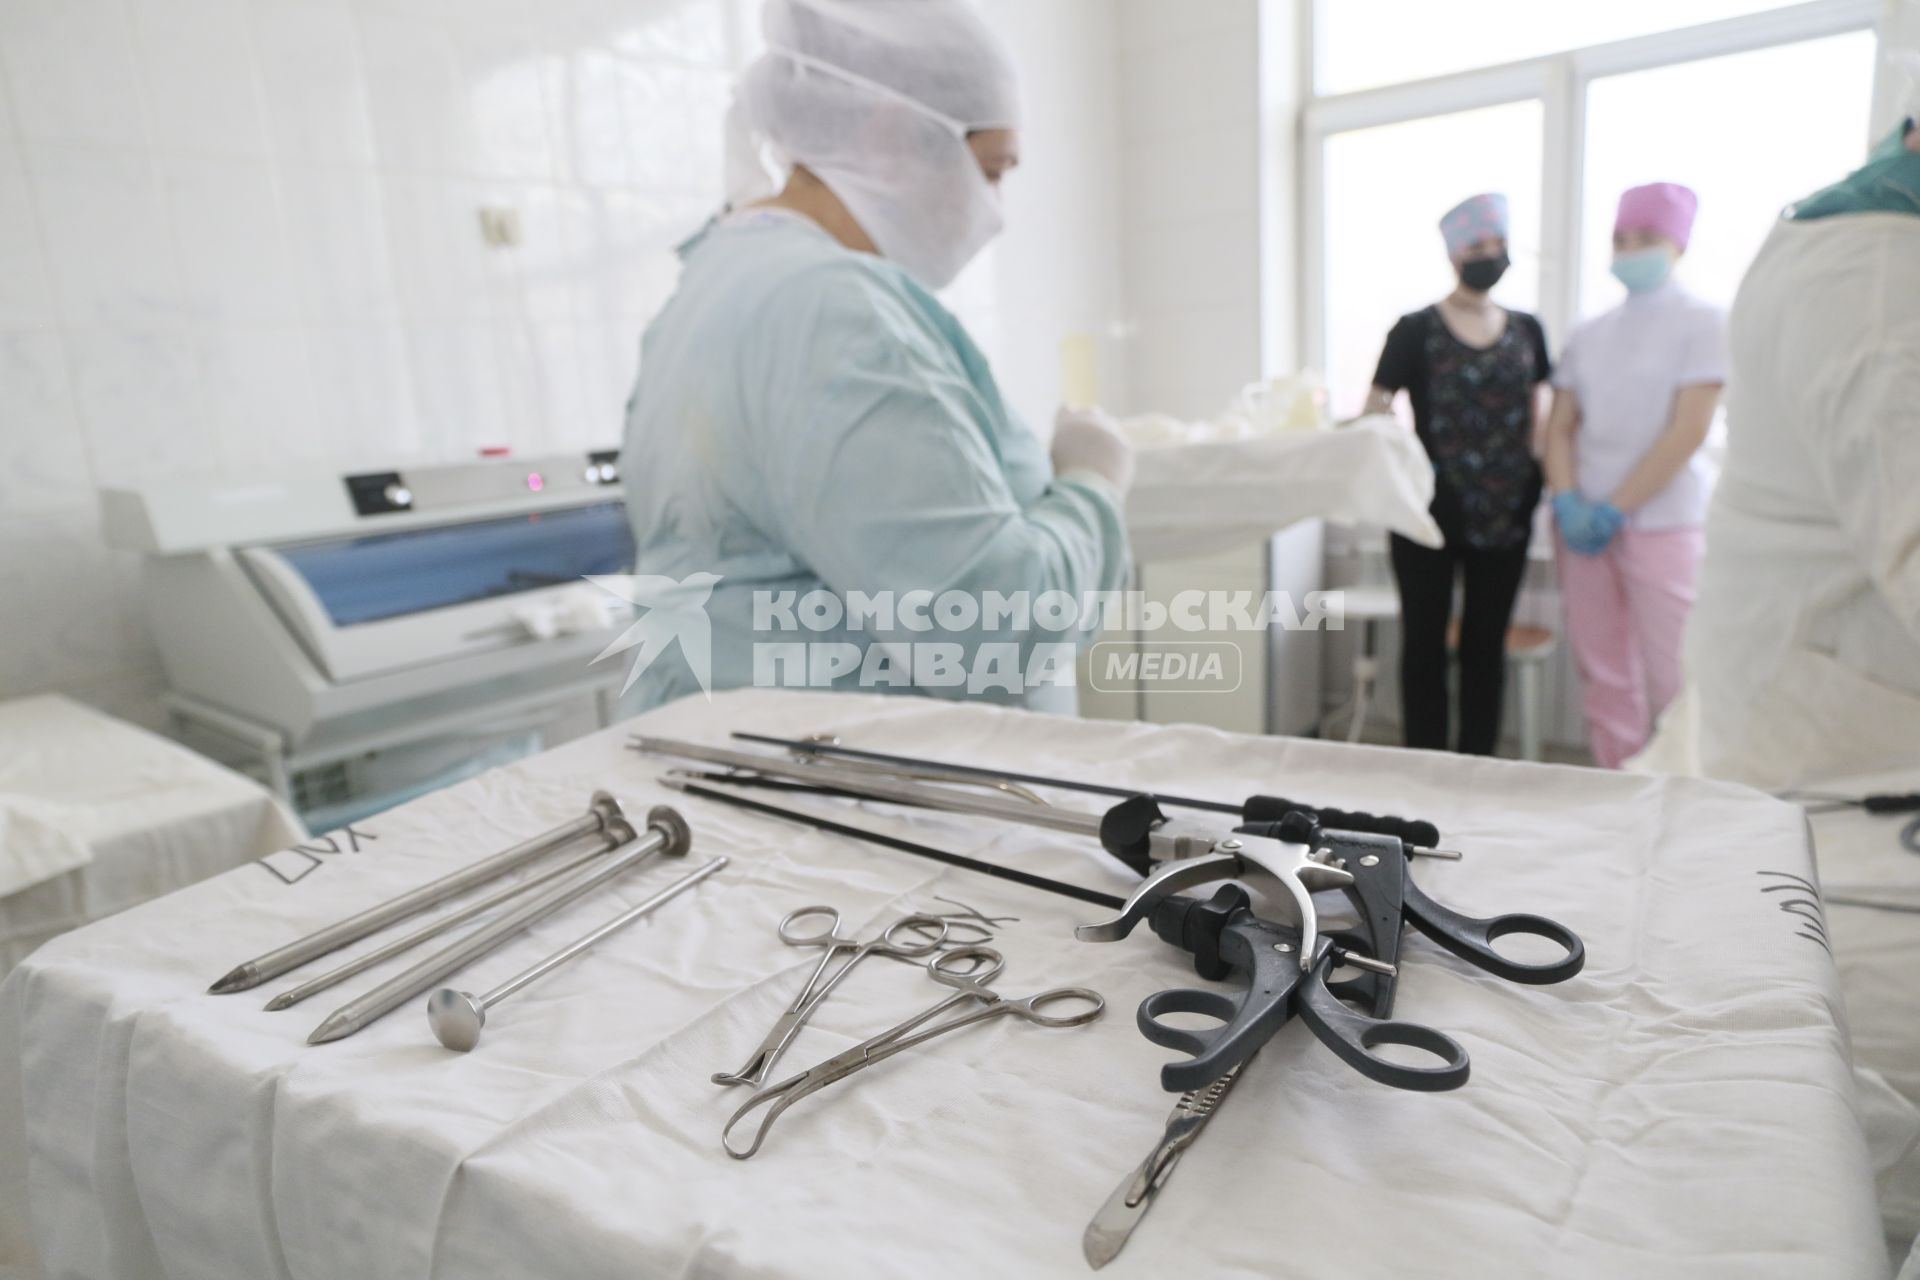 Барнаул. Проведение хирургической операции в операционном блоке.